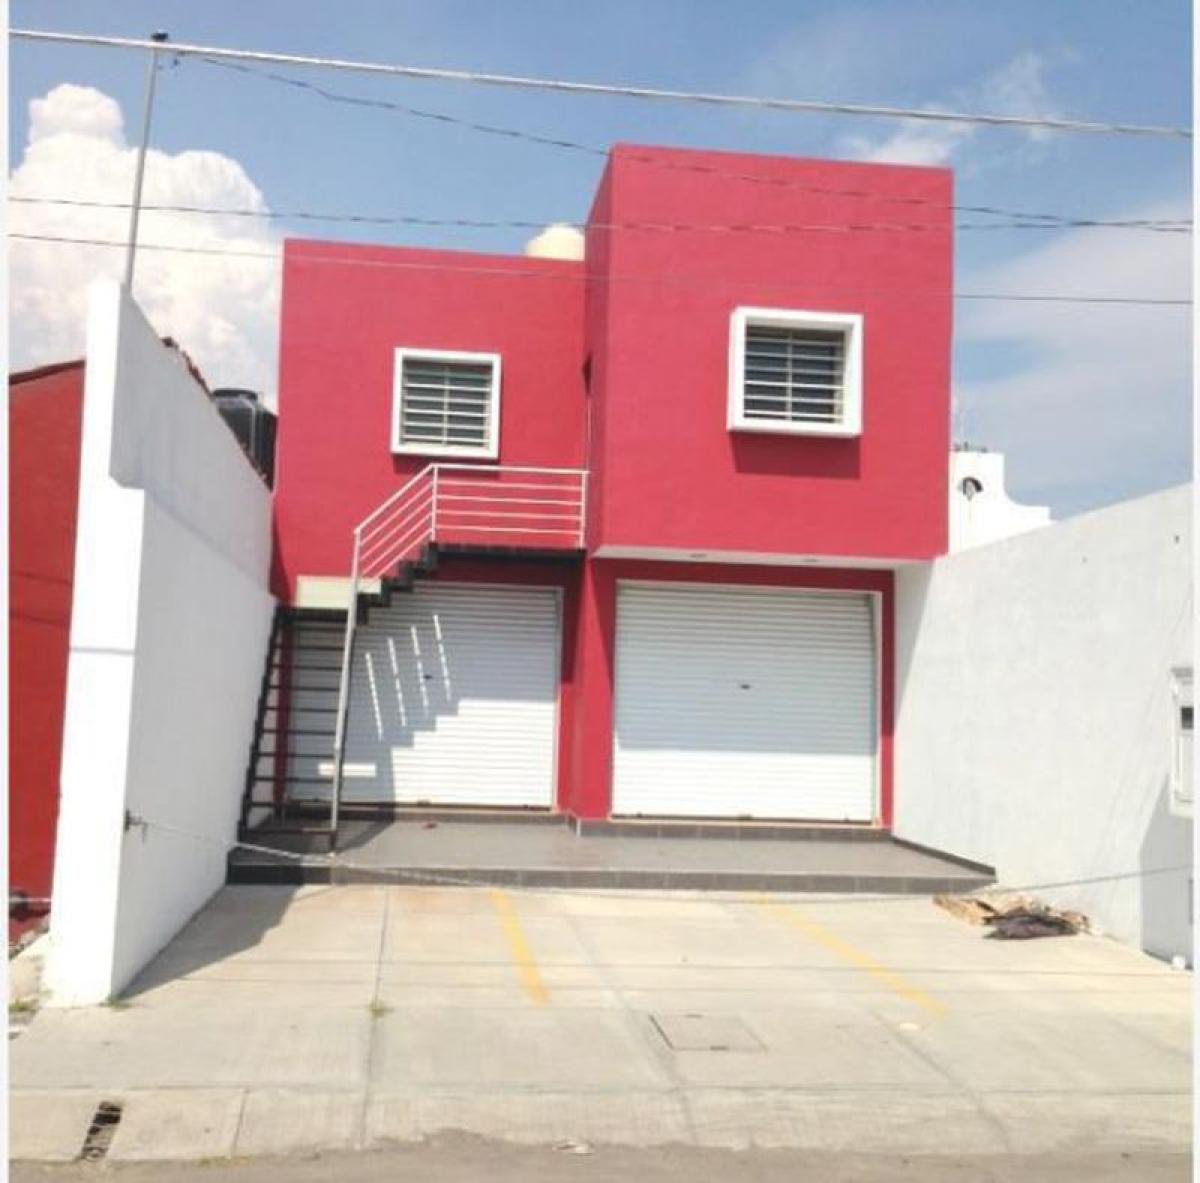 Picture of Apartment Building For Sale in Villa De Álvarez, Colima, Mexico